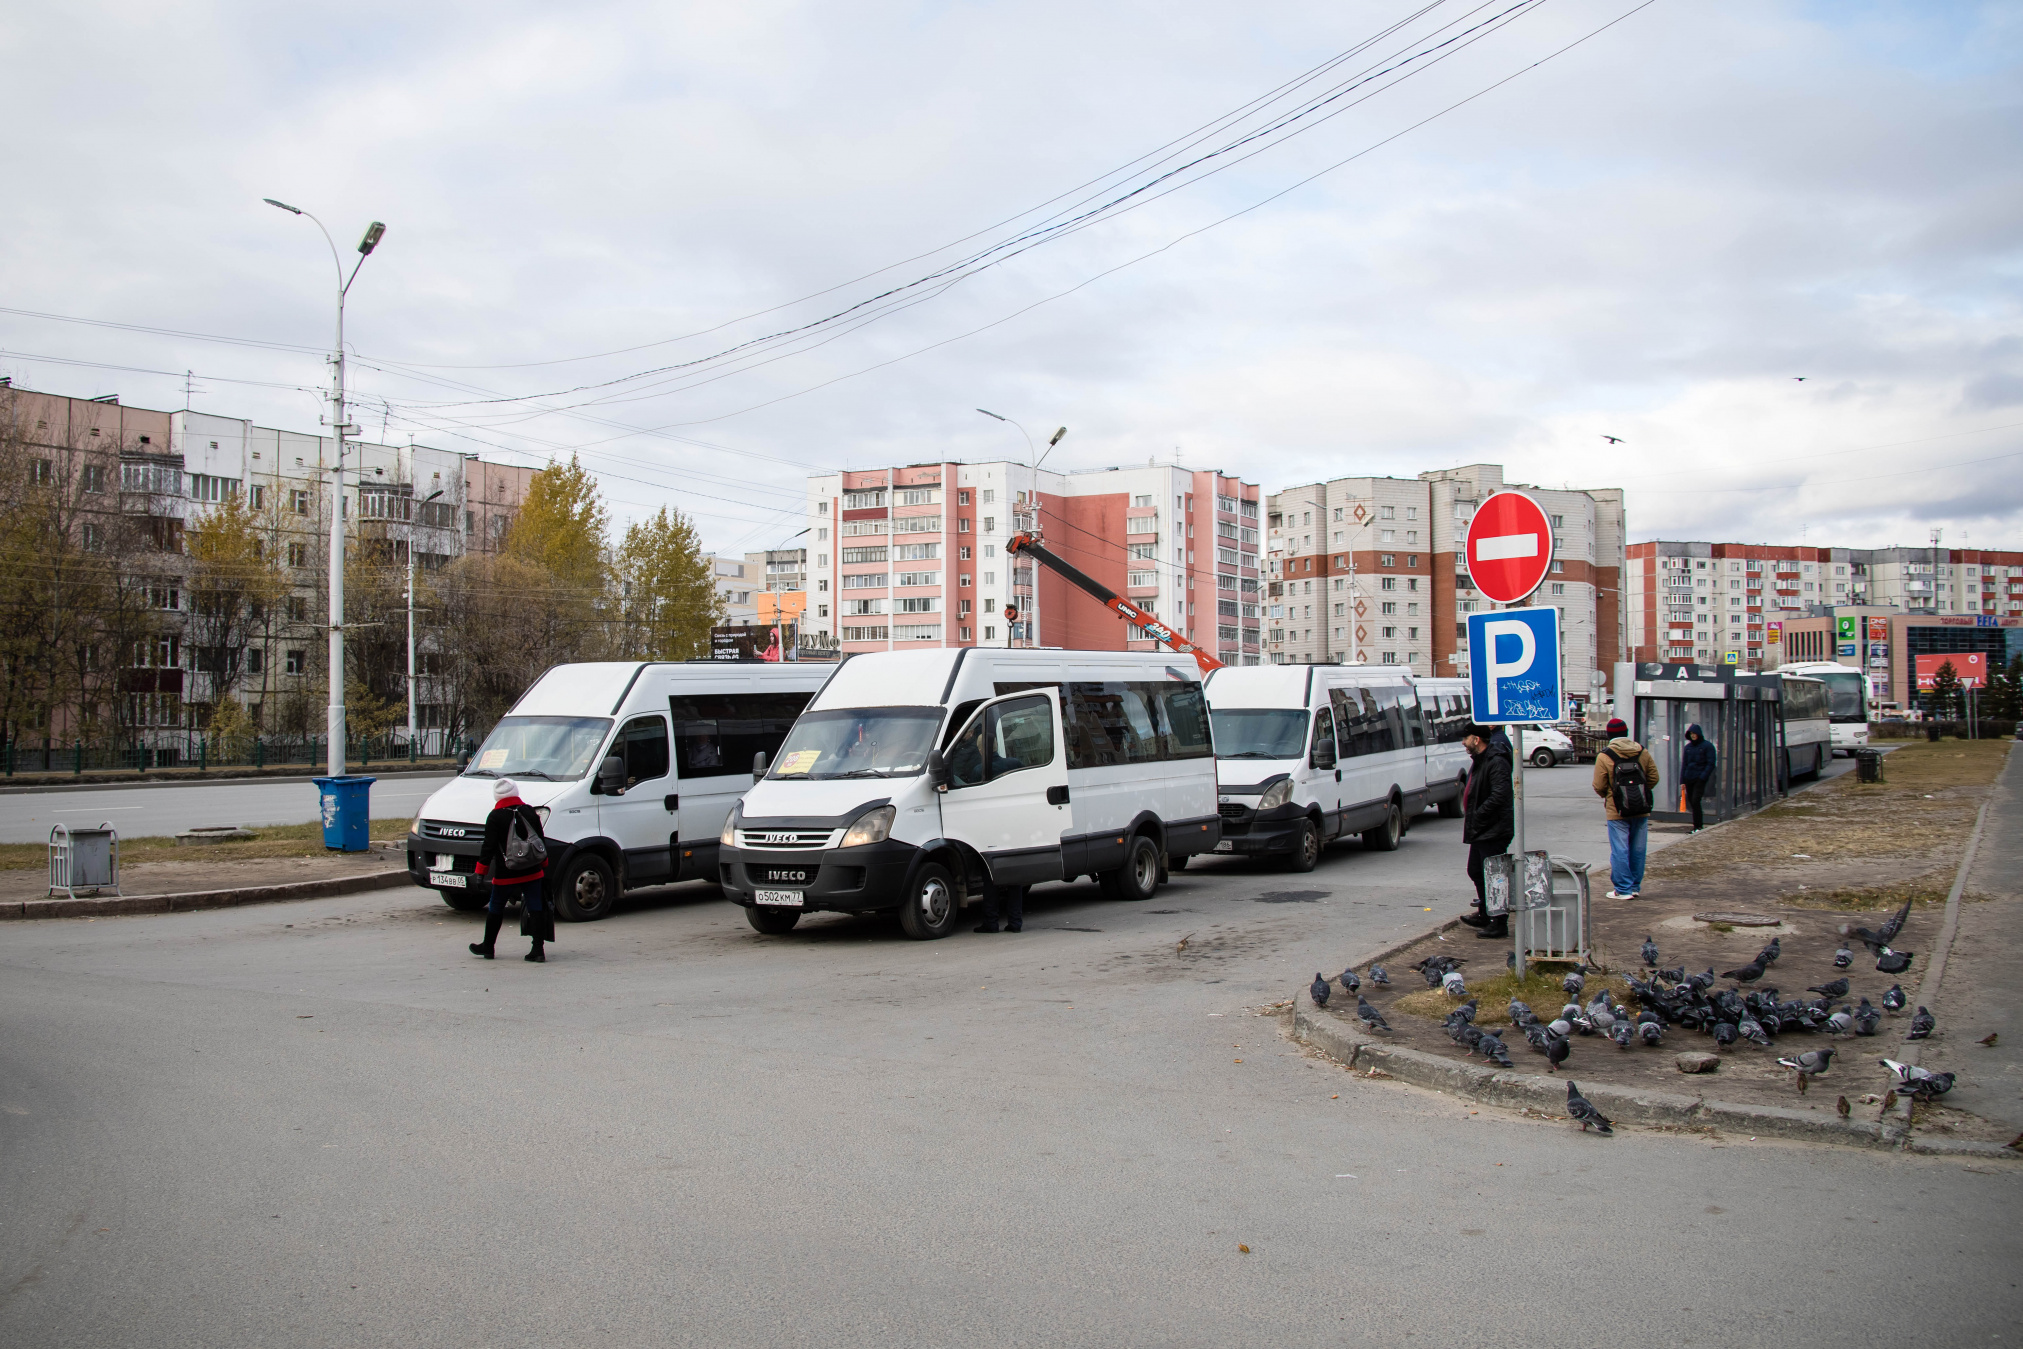 Теперь жители, отправляющиеся из Сургута в поселения района, могут ждать автобус в тепле